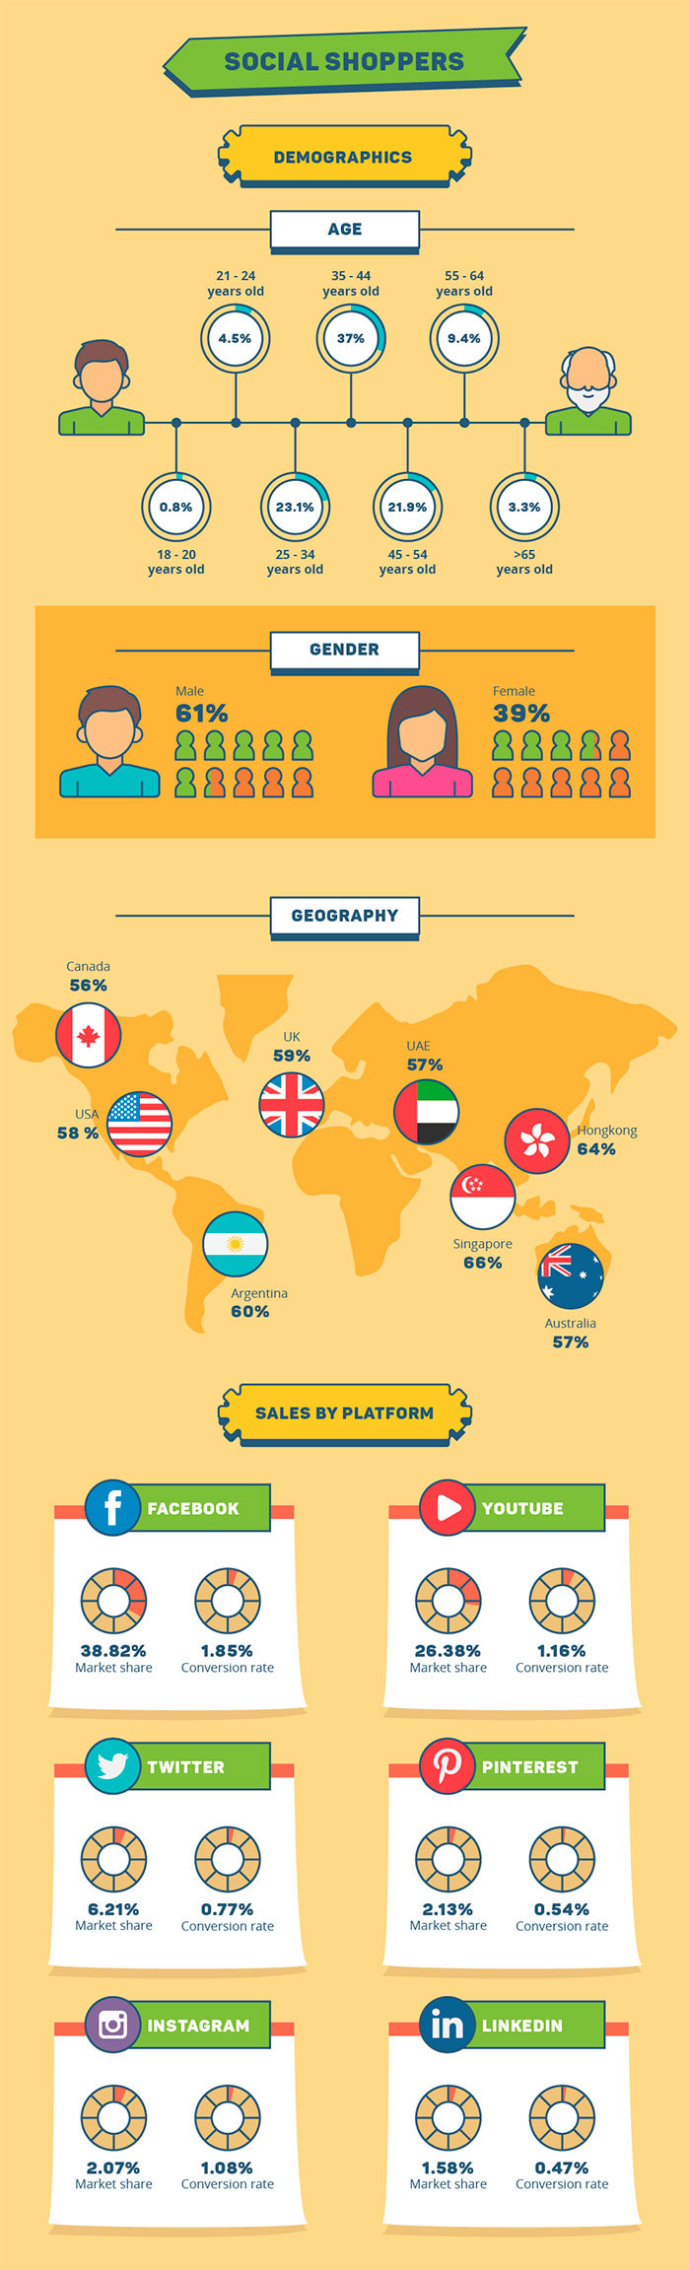  E-commerce в соцсетях: факты, цифры и особенности поведения пользователей (инфографика)